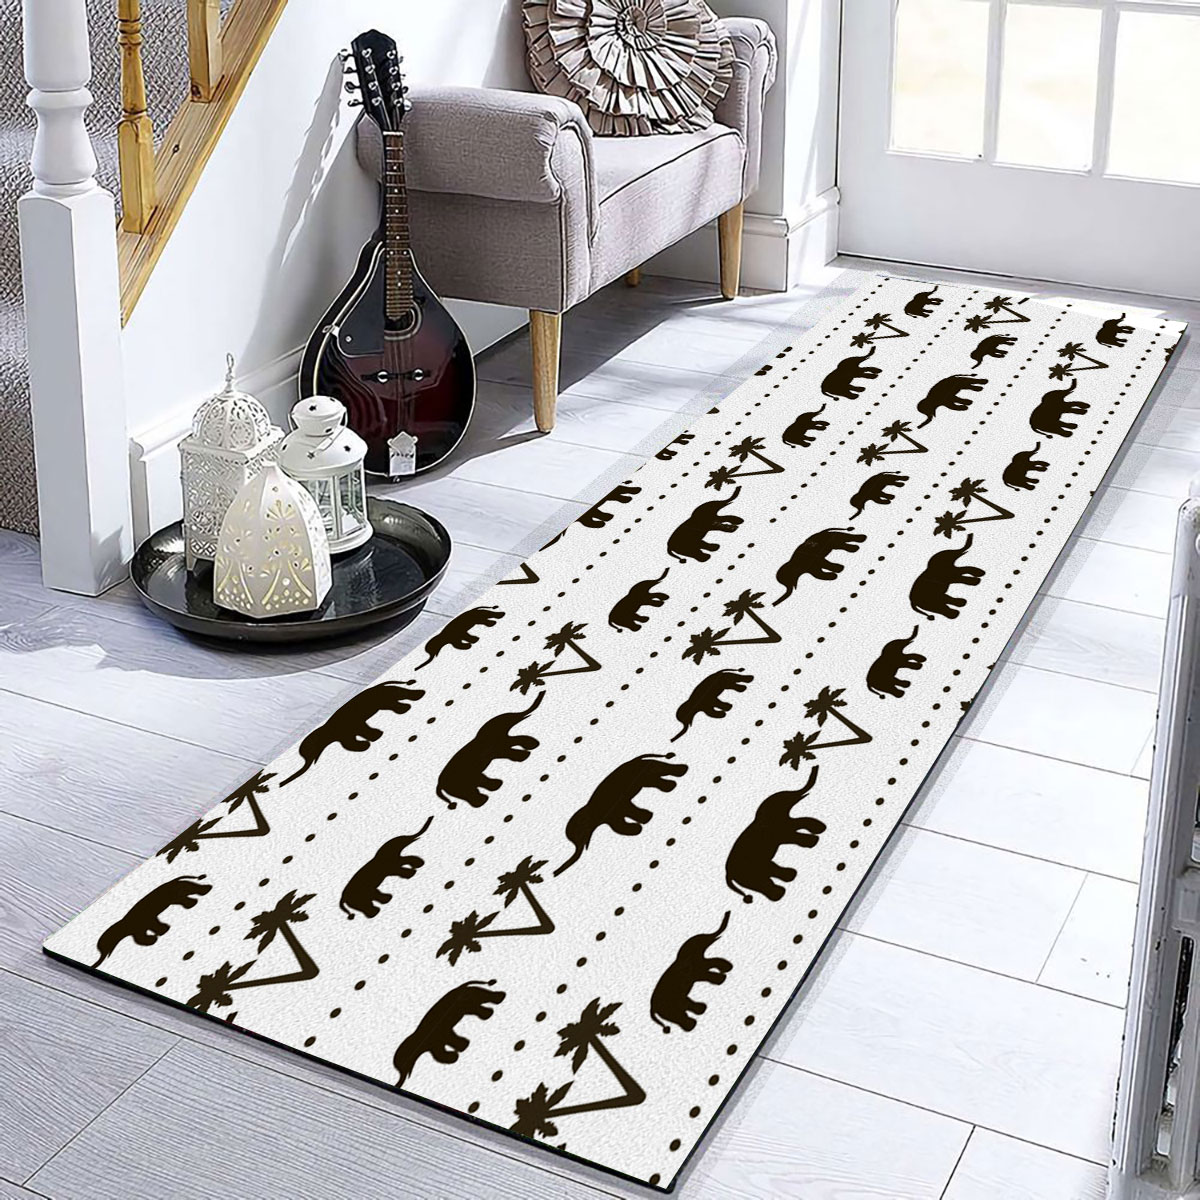 Black And White African Elephant Runner Carpet 6